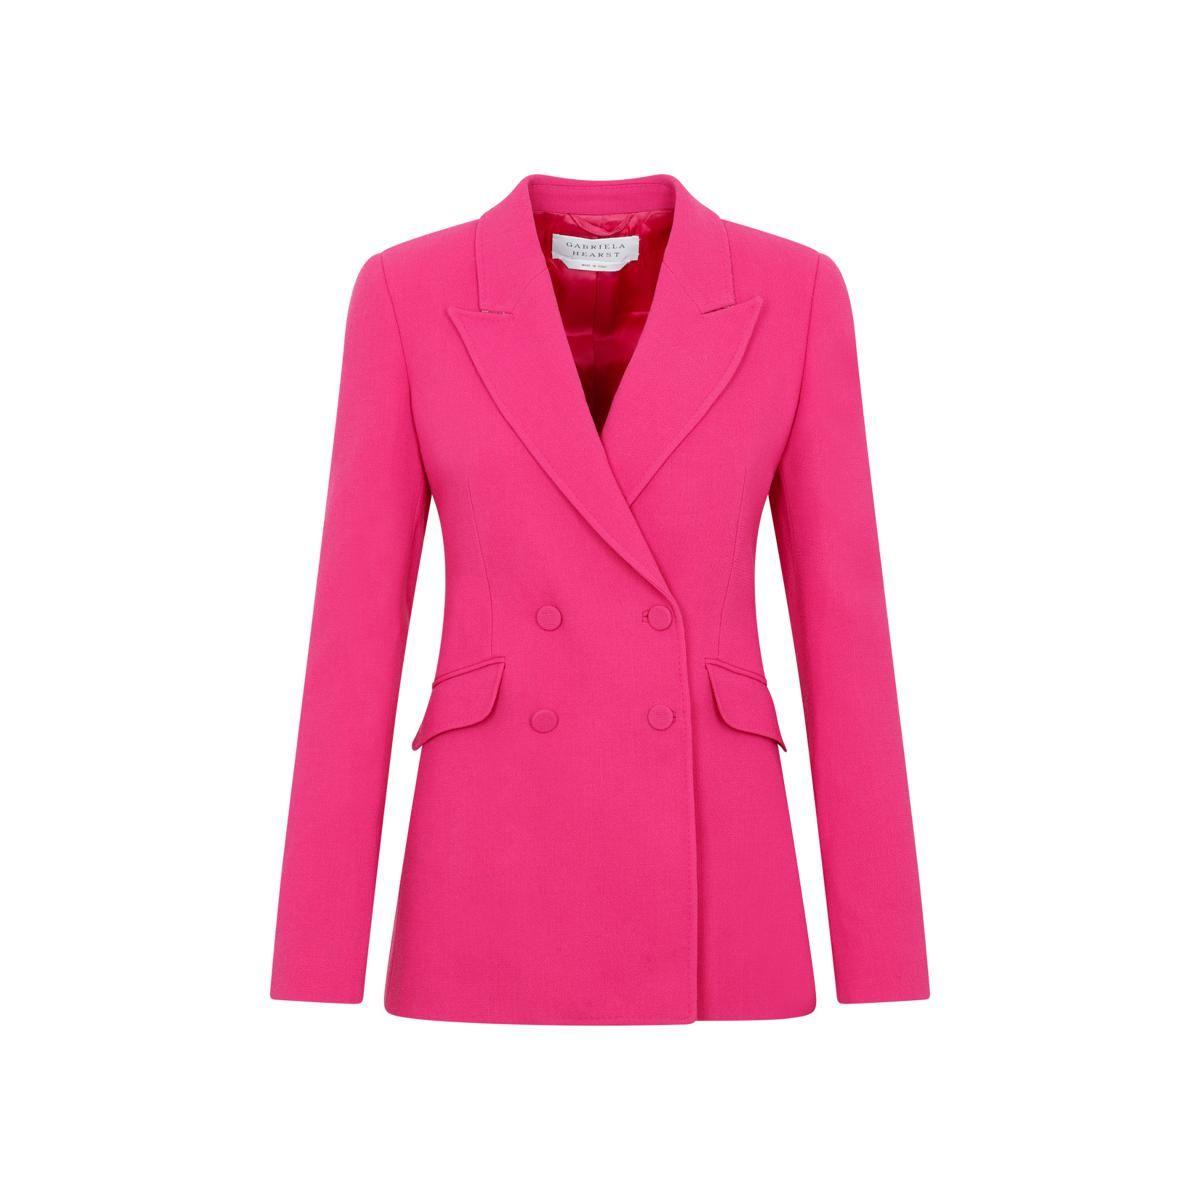 Gabriela Hearst Stephanie Blazer Jacket in Pink | Lyst